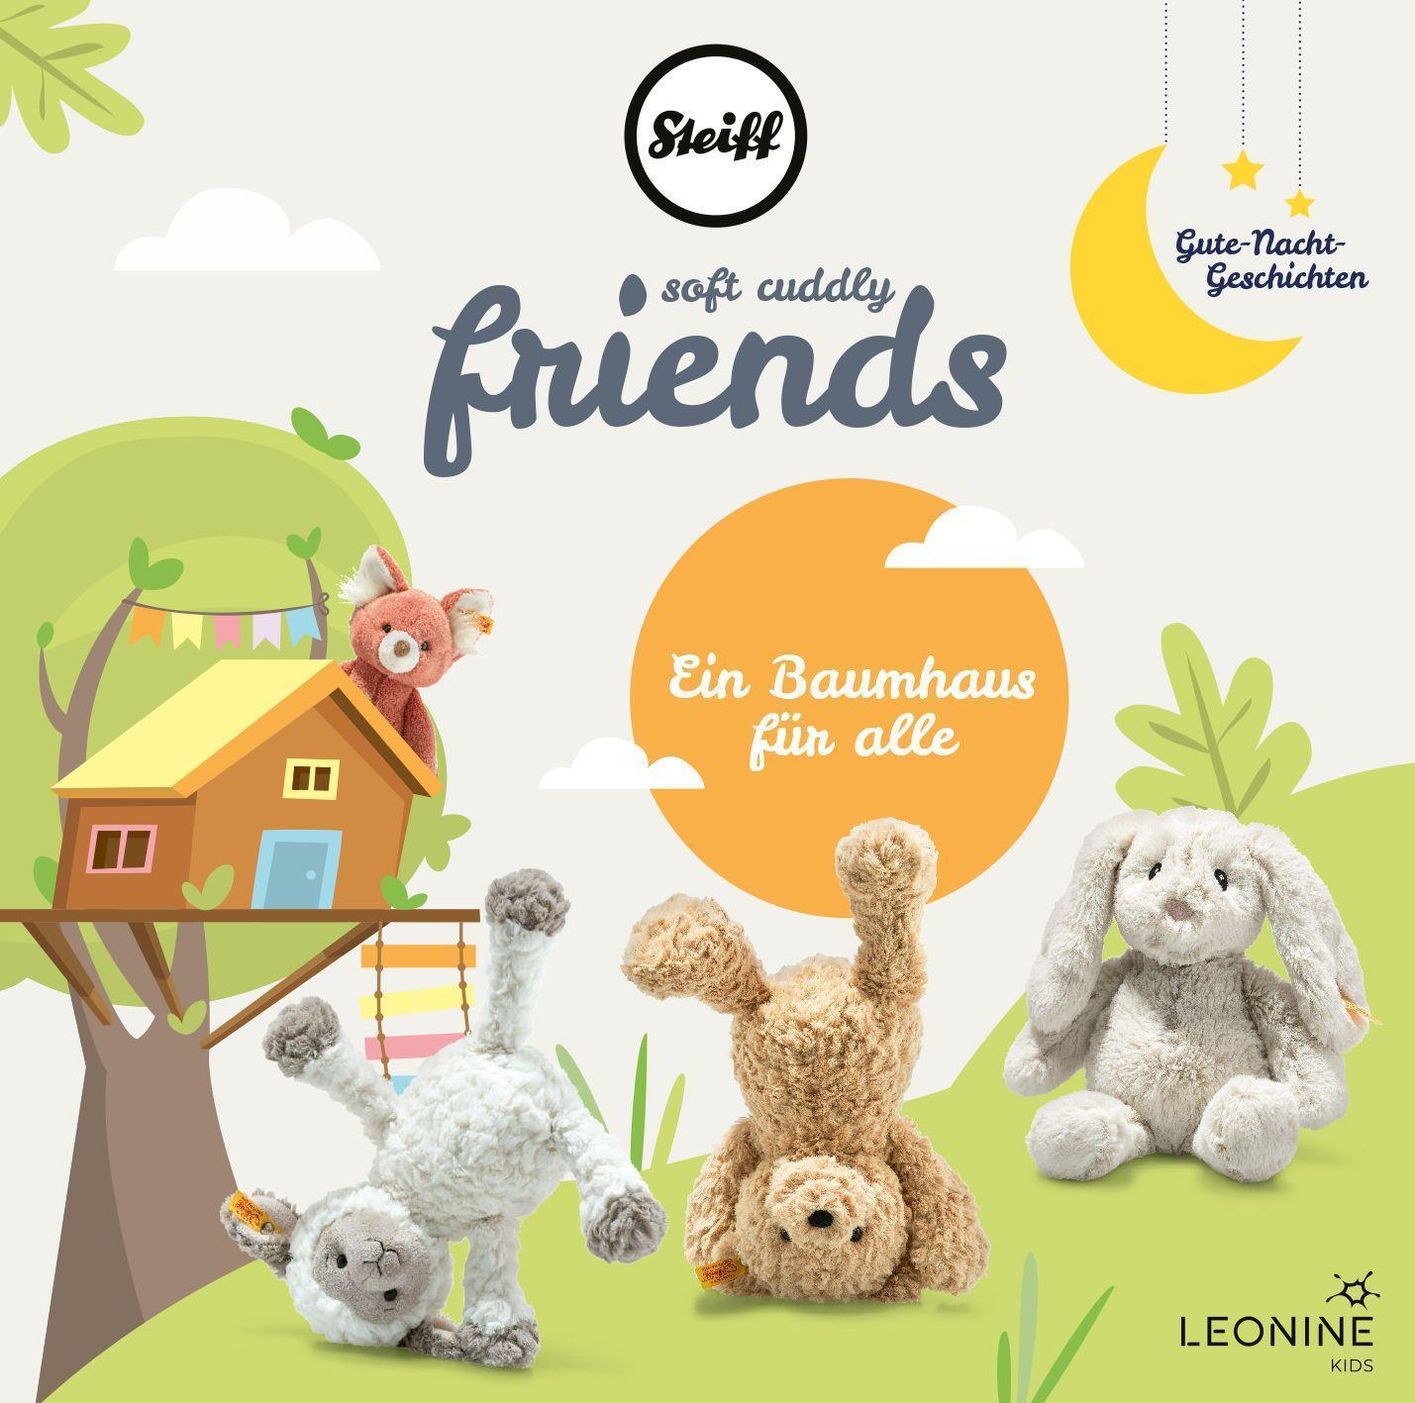 Steiff - Soft Cuddly Friends - Ein Baumhaus für alle, 1 Audio-CD Hörbuch  jetzt bei Weltbild.de bestellen